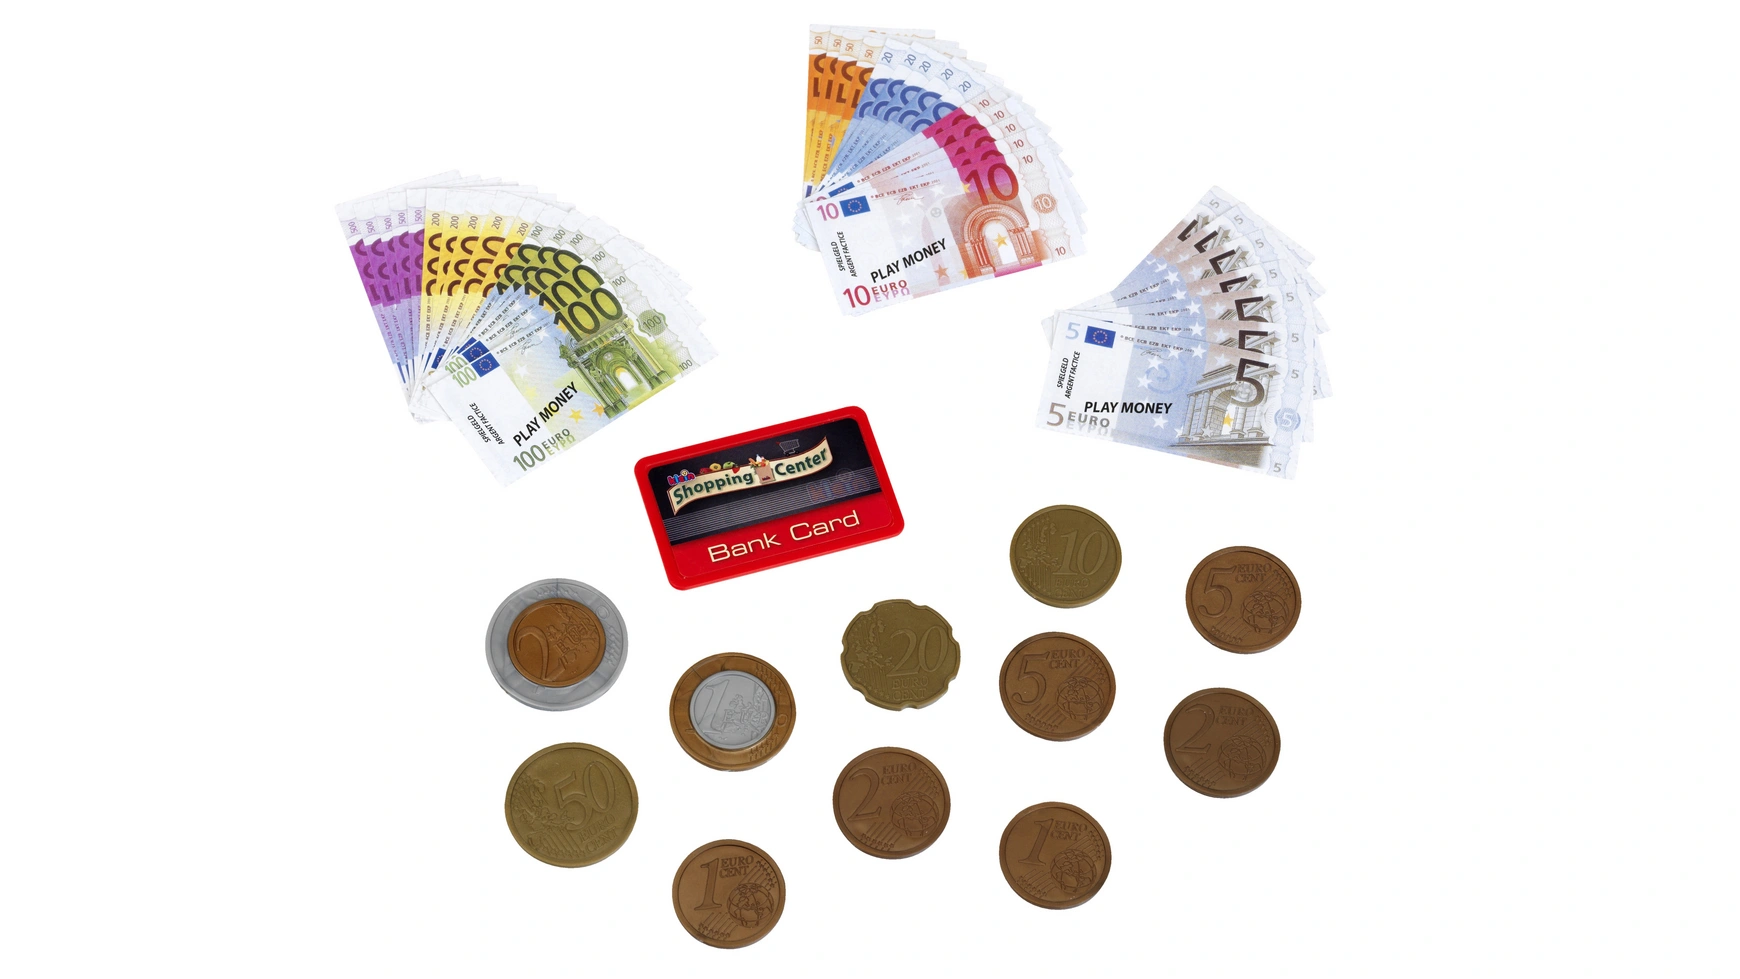 Тео Klein деньги евро с кредитной картой I 37 банкнот и 11 монет от монеты в 1 цент до банкноты в 500